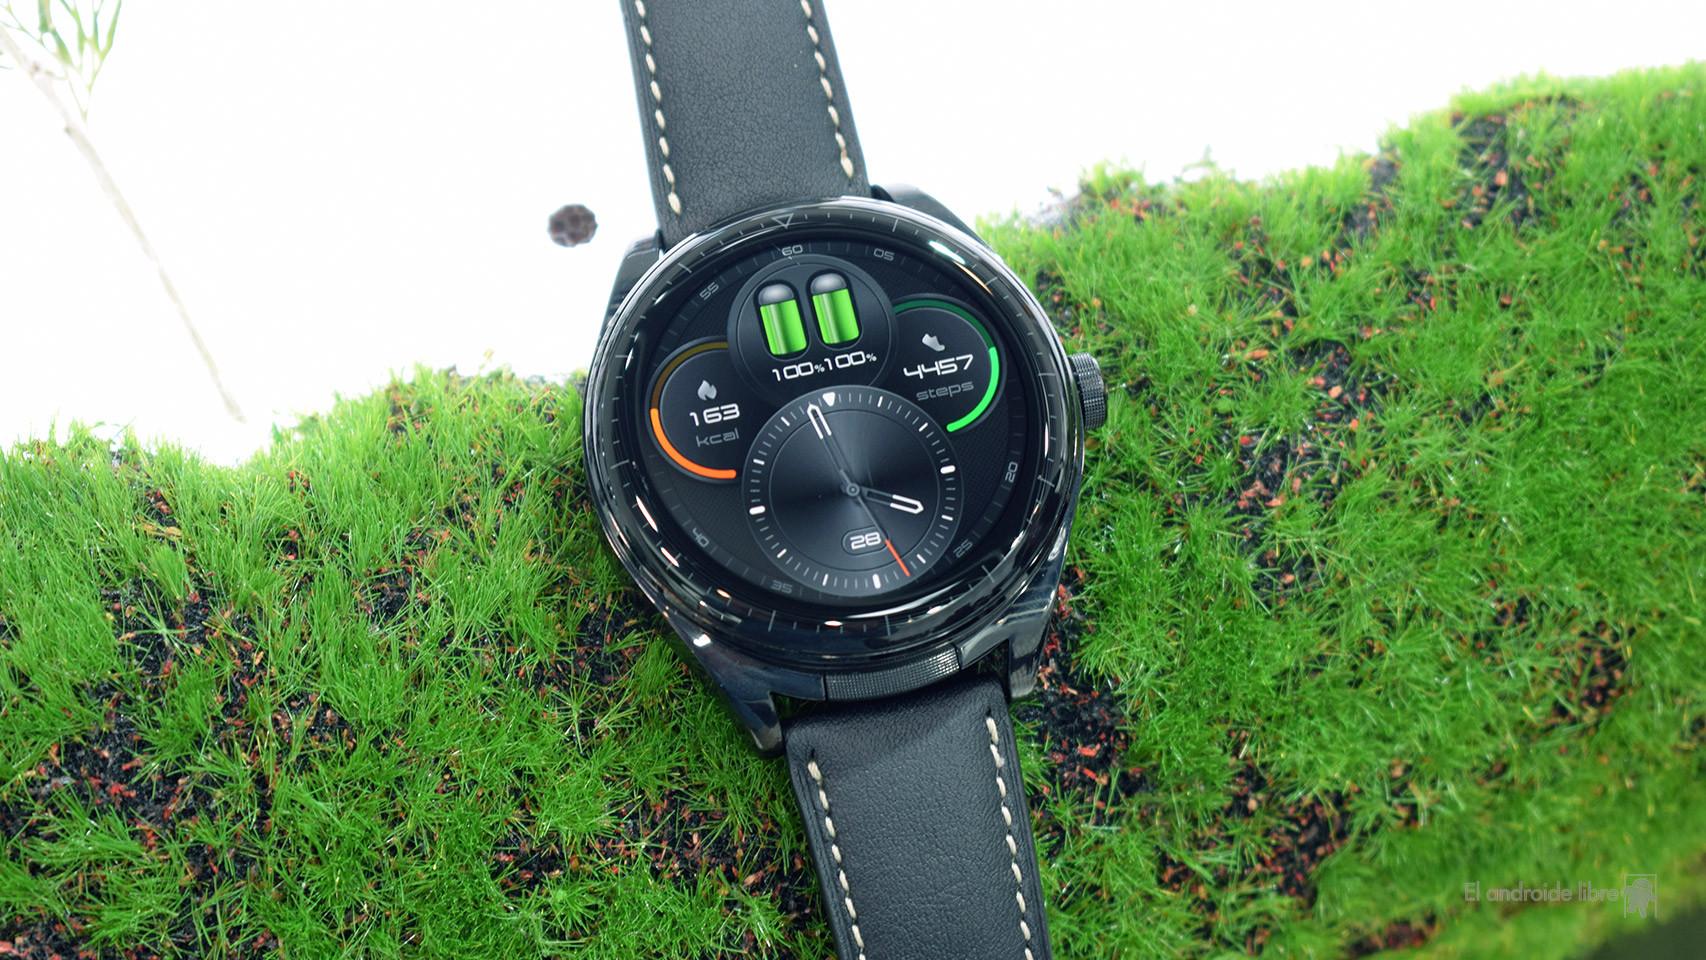 Smartwatch Huawei Watch Buds Negro